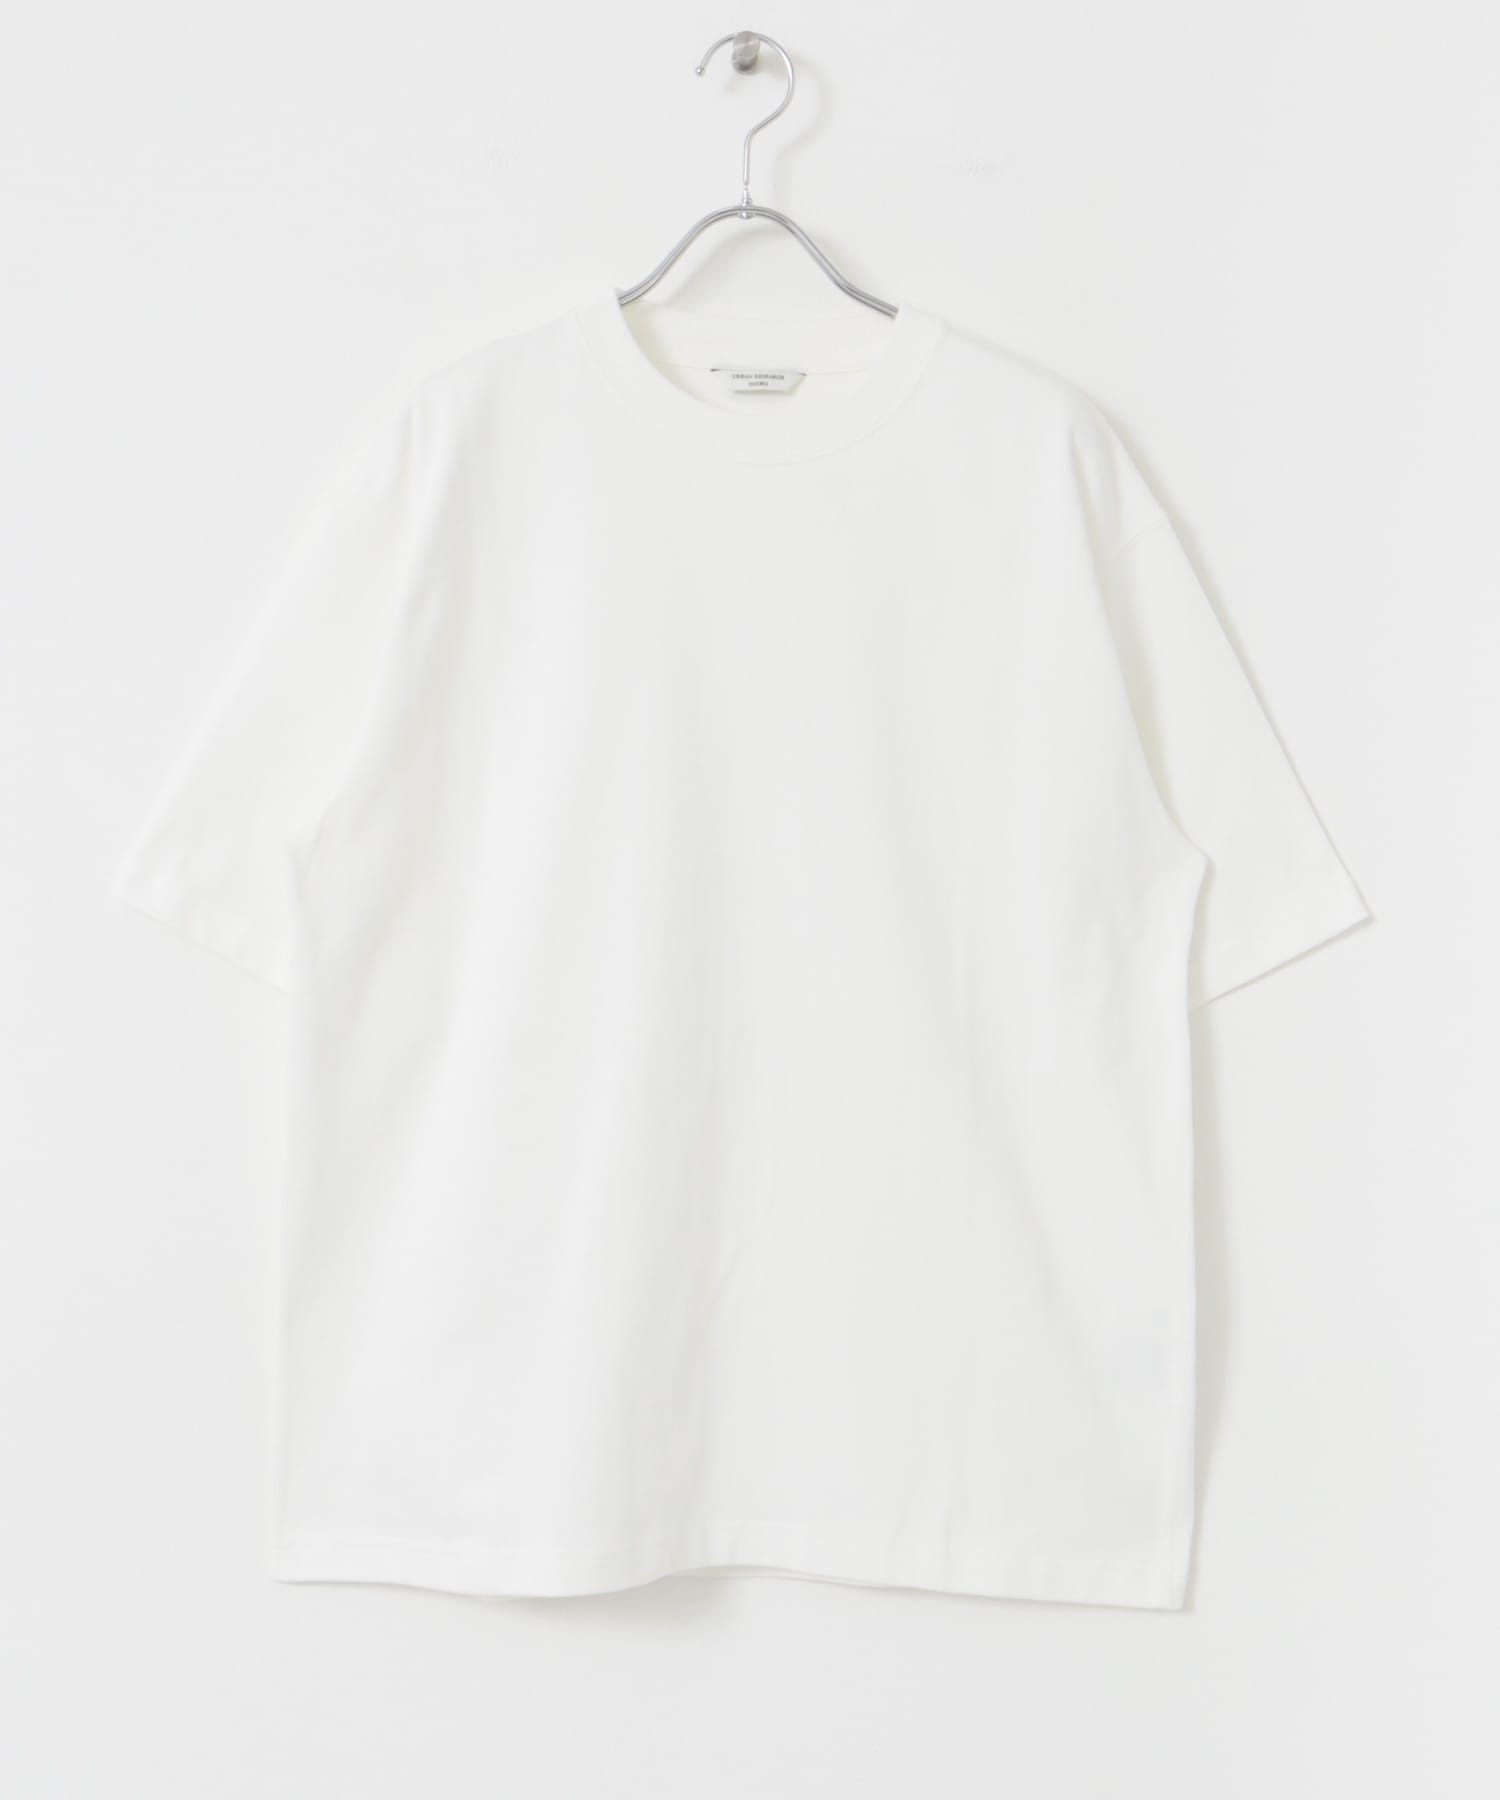 美國棉短袖T恤(白色-M-WHITE)